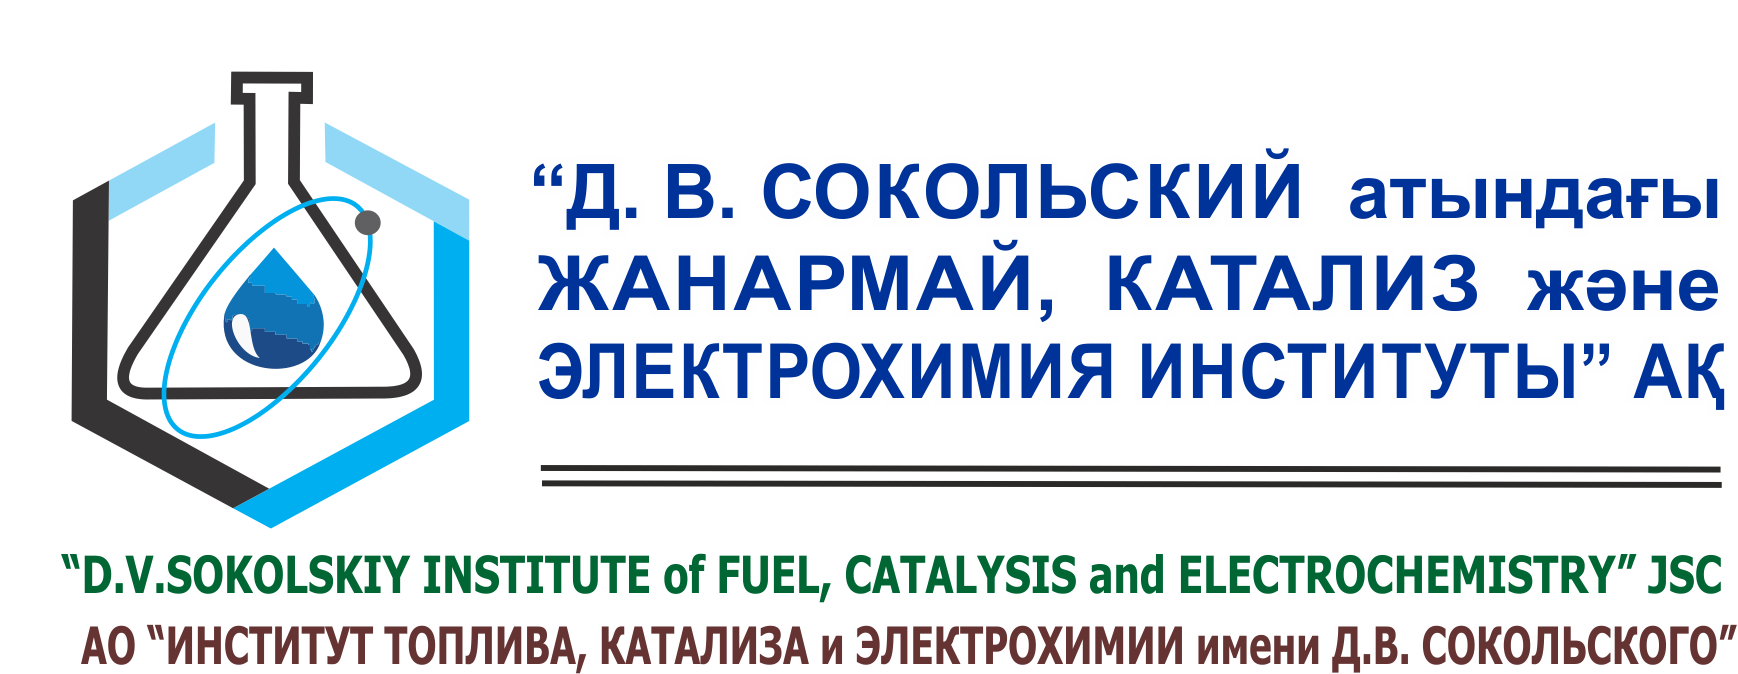 Организация производства металлических каталитических нейтрализаторов токсичных компонентов в газовых выбросах автотранспорта и промышленных предприятий